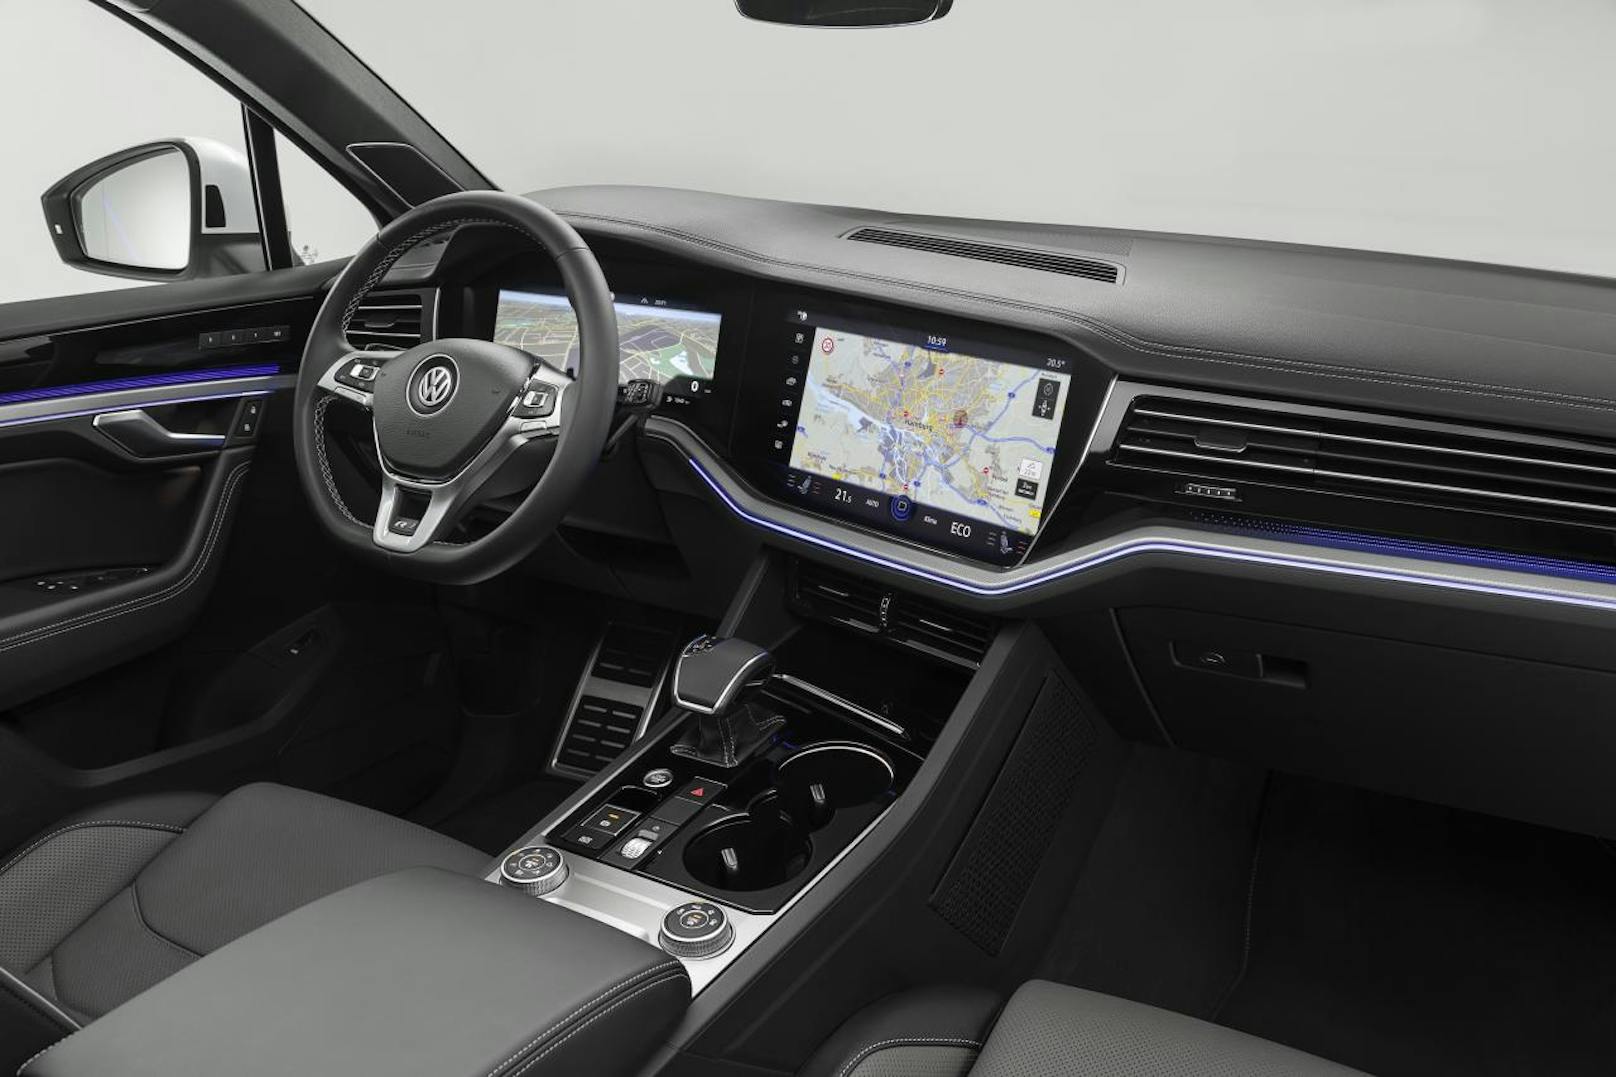 Erstmals präsentiert Volkswagen mit dem neuen Touareg das volldigitalisierte Innovision Cockpit.